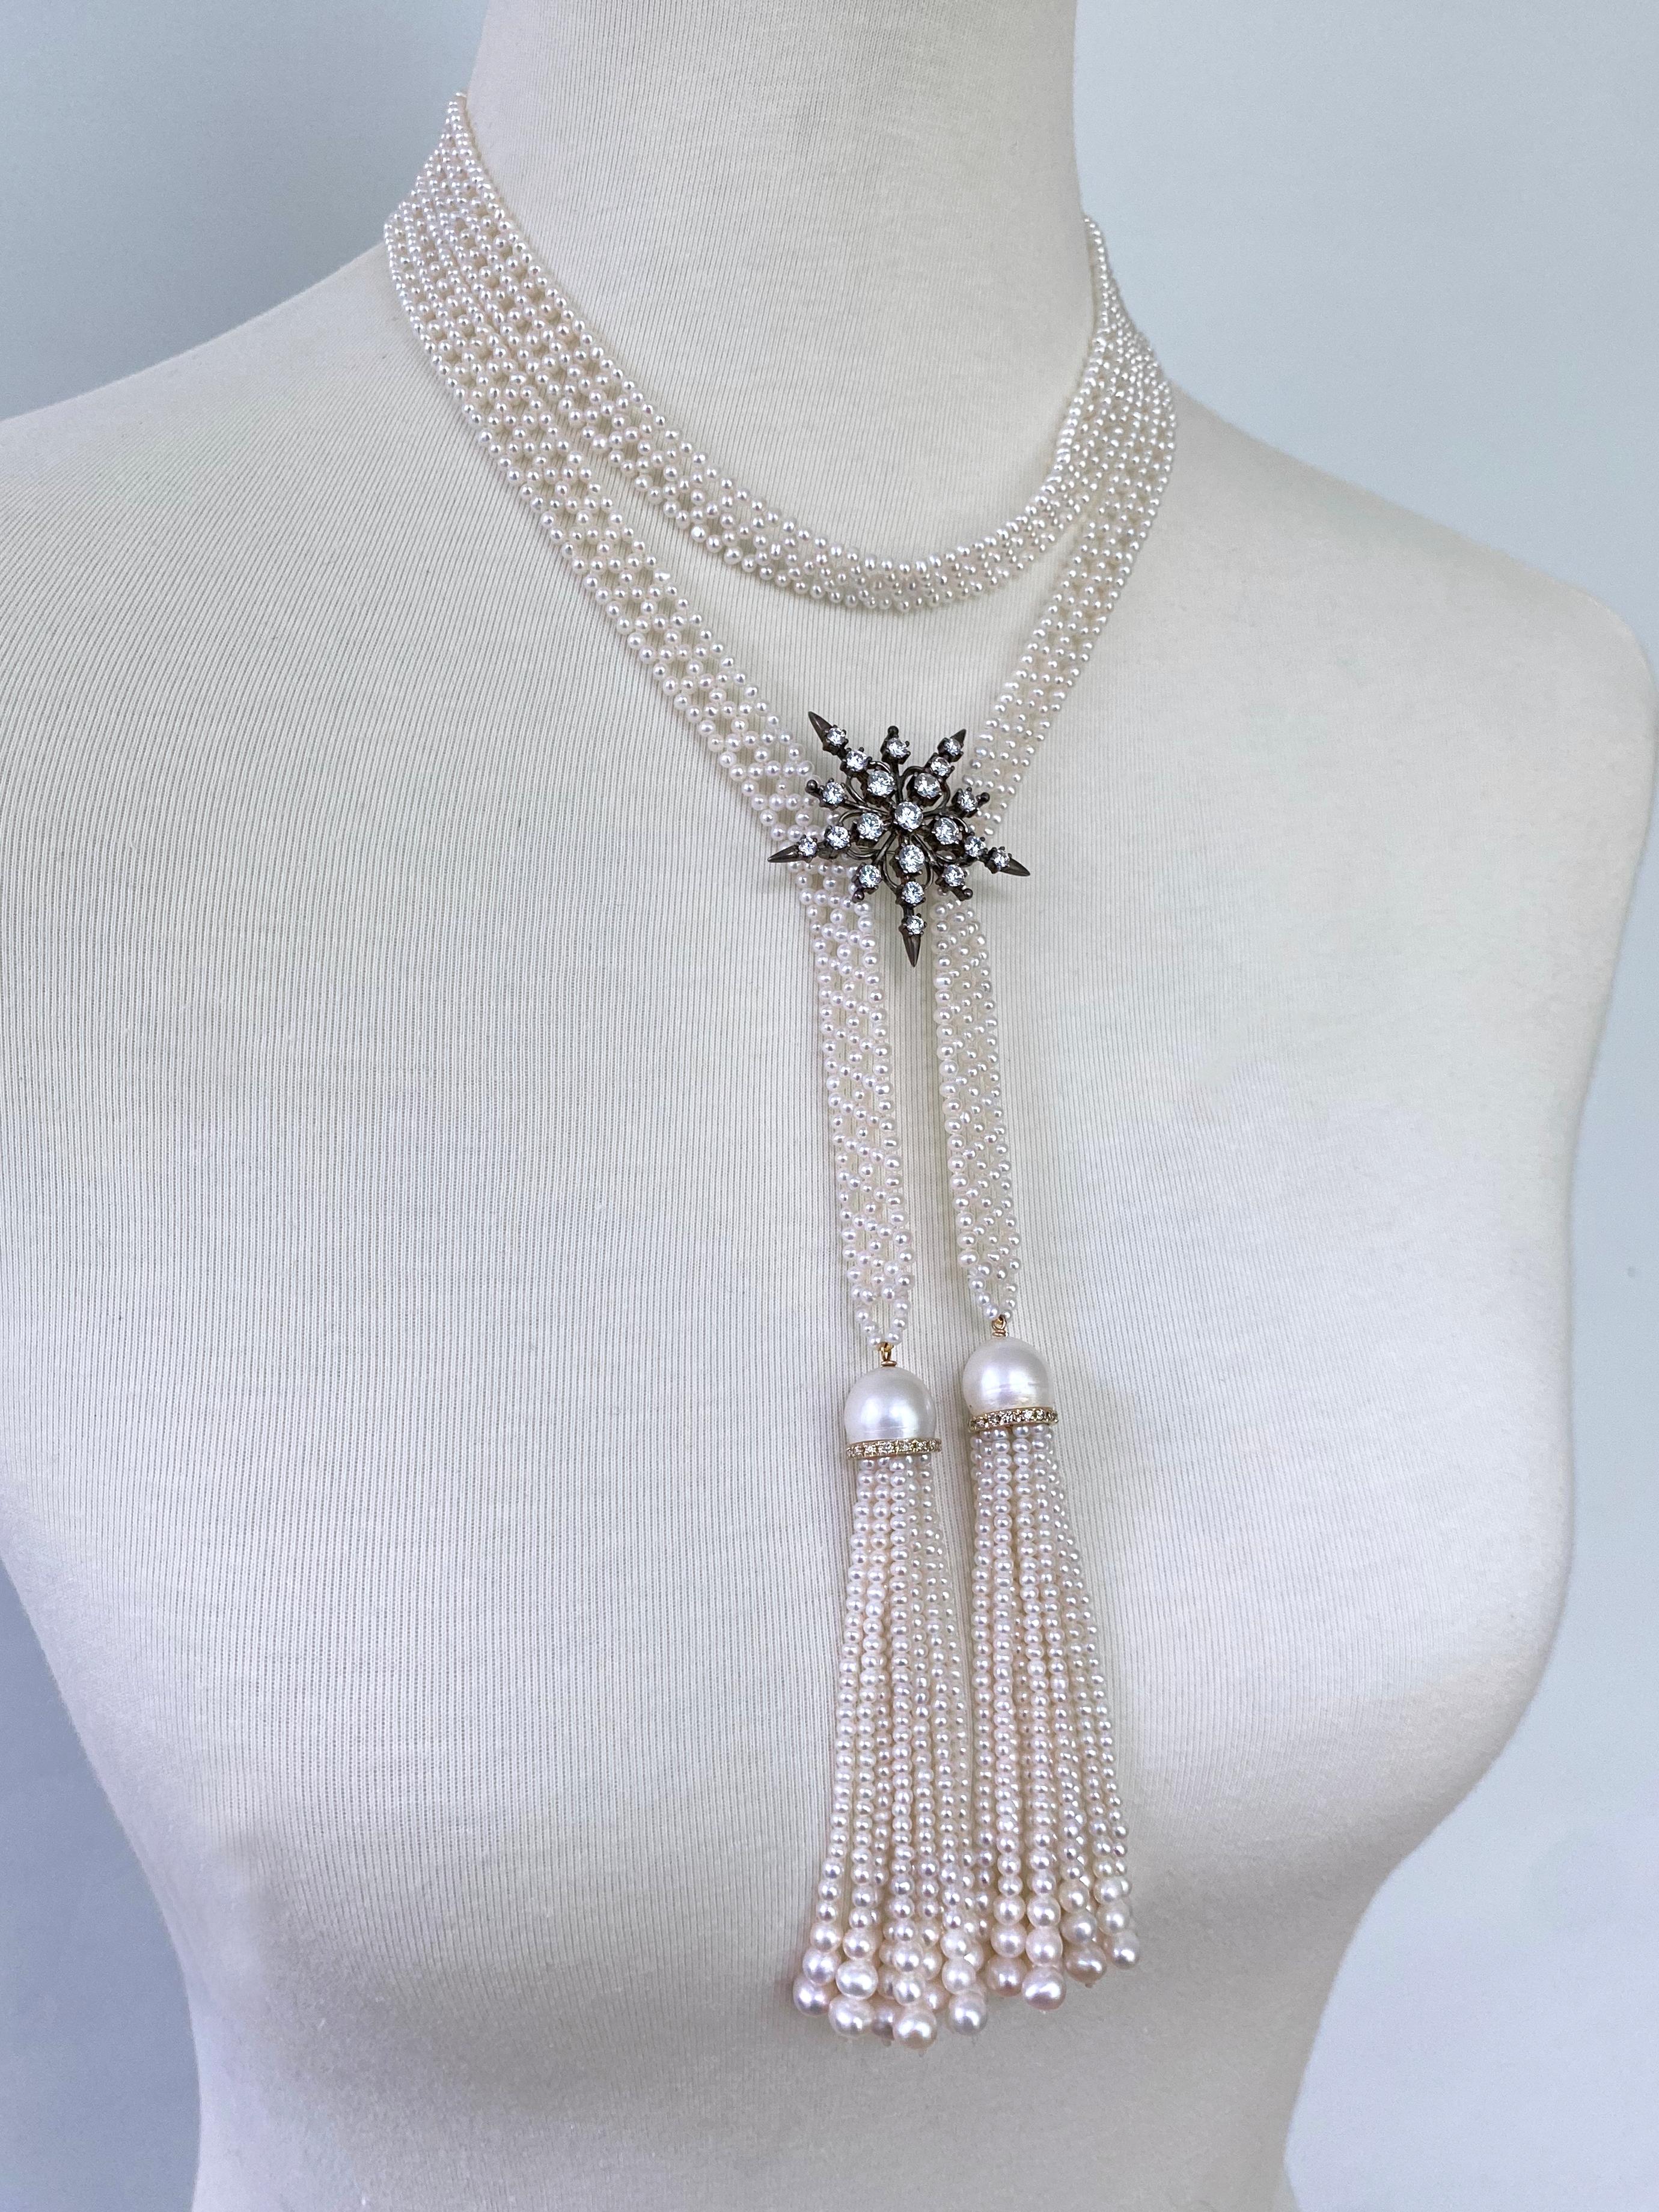 Magnifique et élégant Sautoir classique de Marina J. Ce Sautoir est composé de perles de rocailles parfaites, tissées de façon complexe pour former un motif fin semblable à de la dentelle. Mesurant 42 pouces de long sans les glands, la longueur de